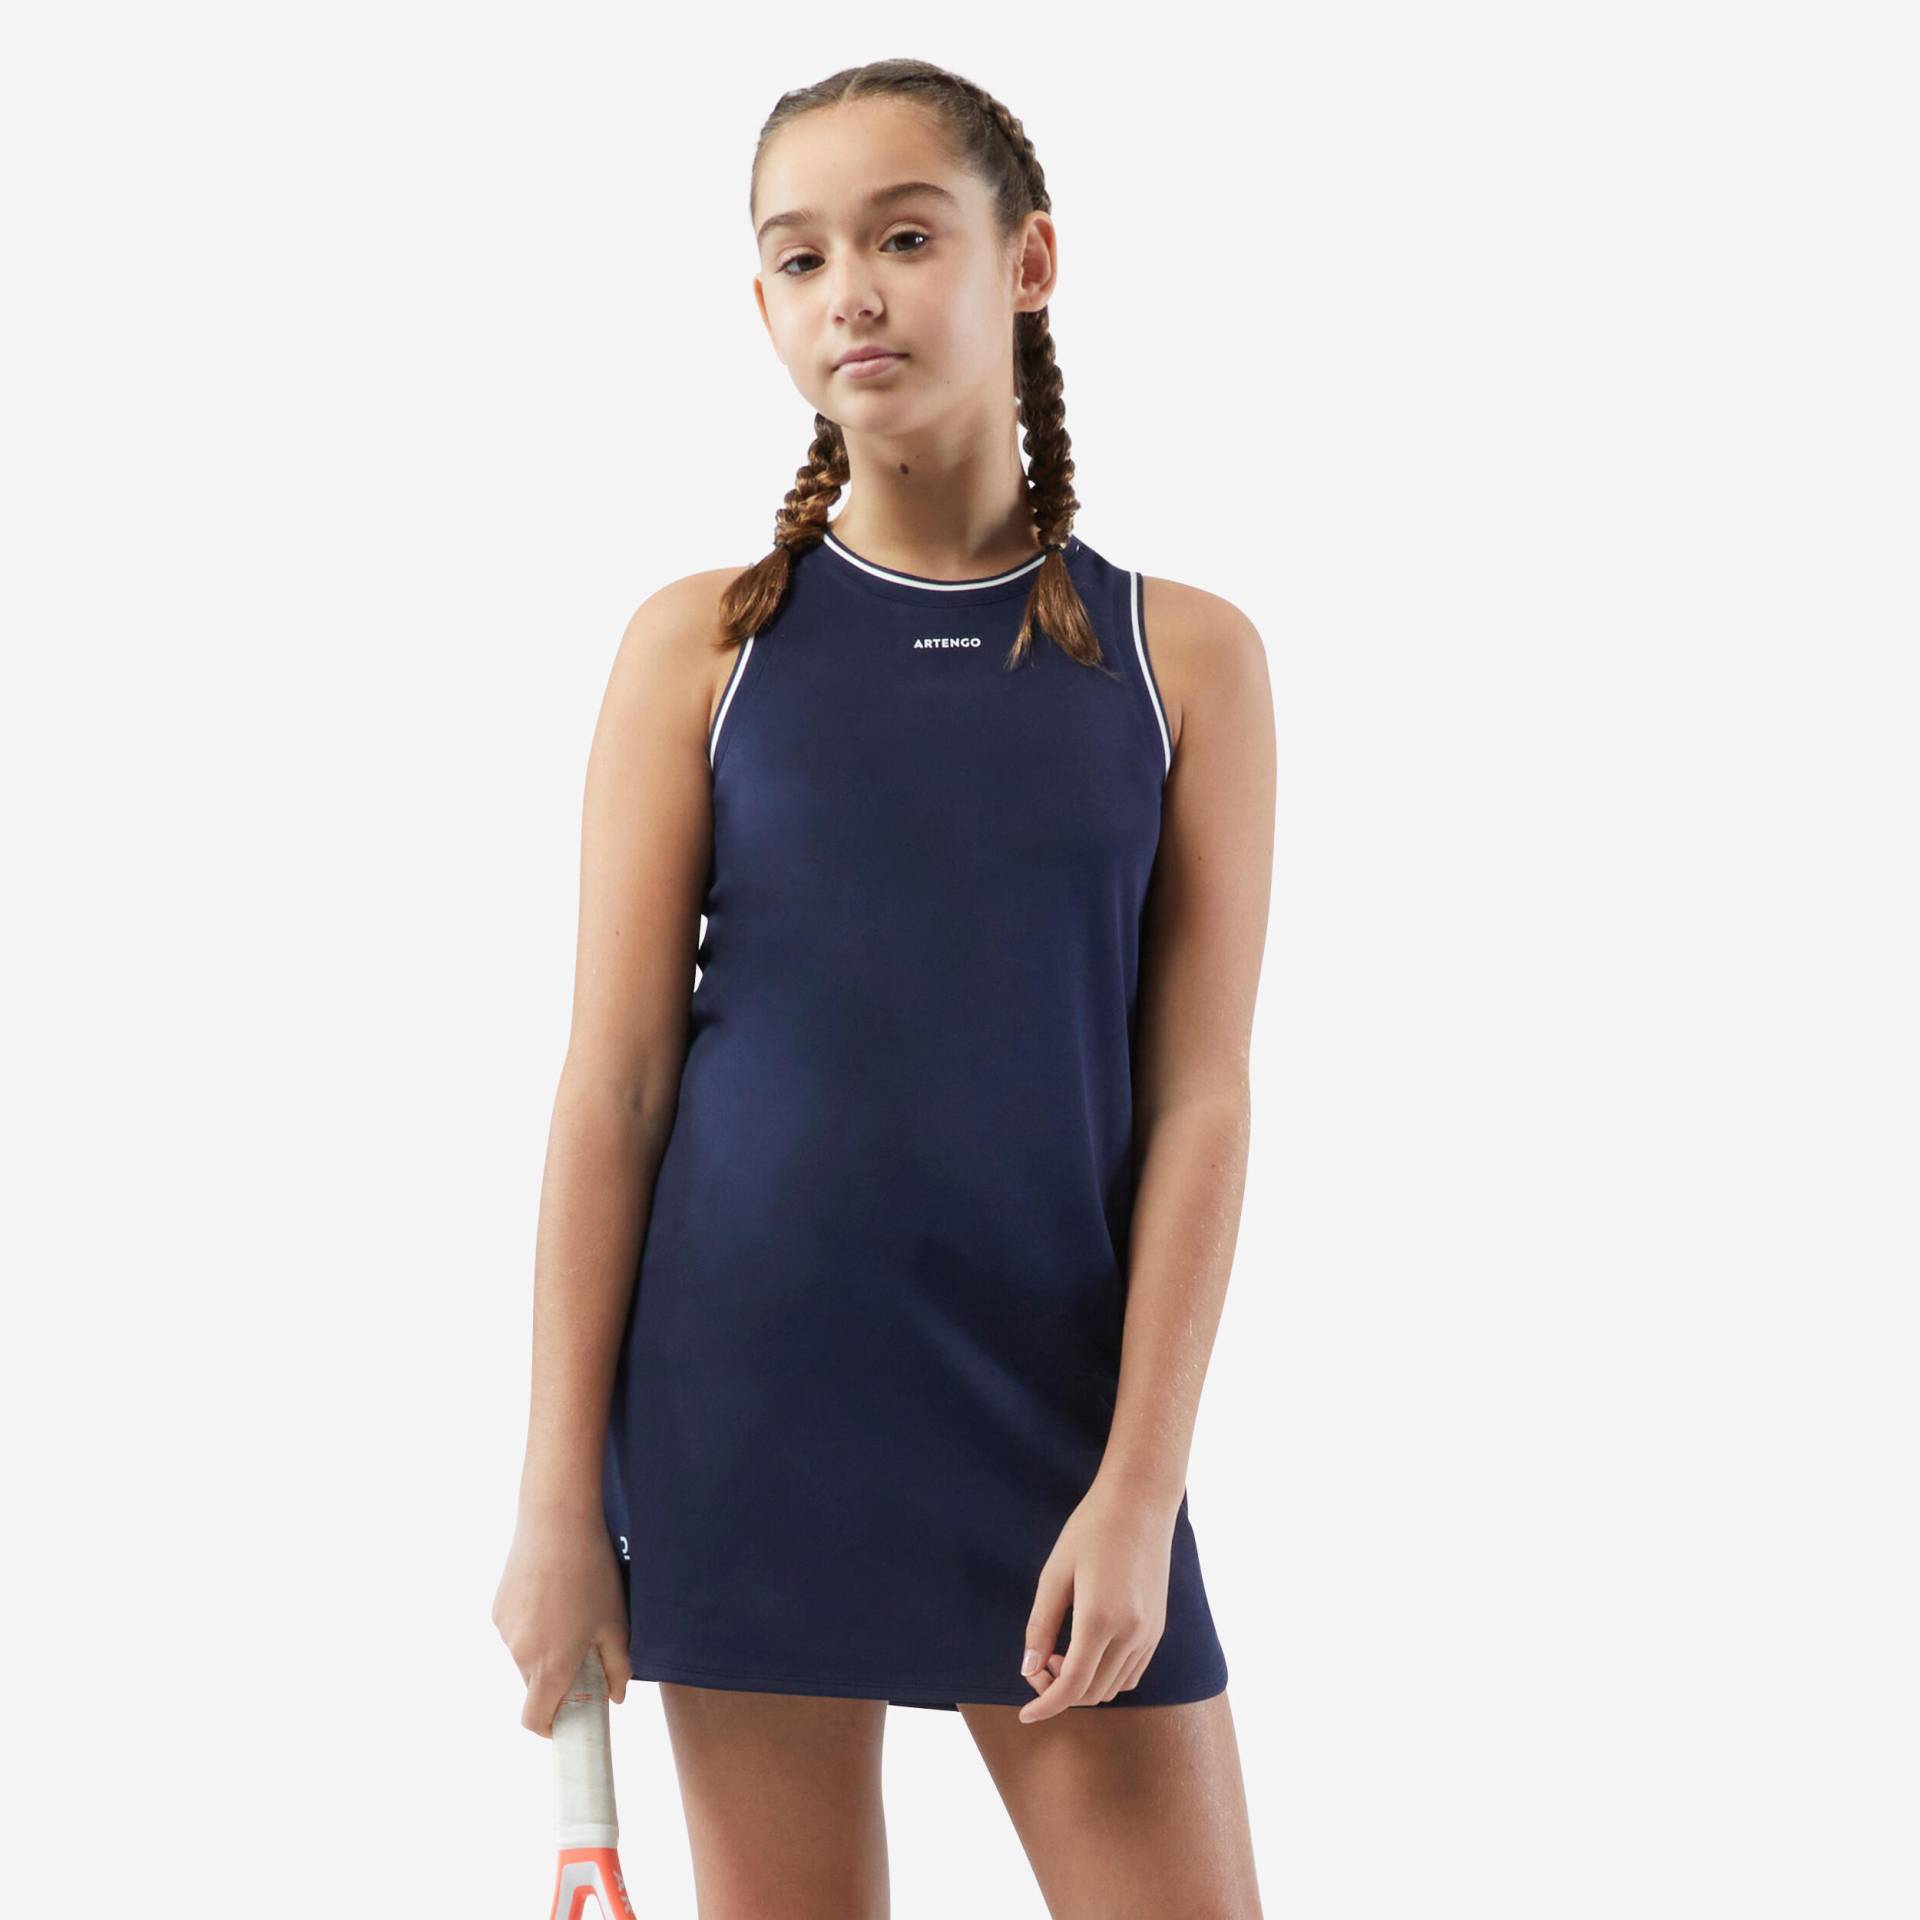 Mädchen Tenniskleid - TDR 500 marineblau/weiss von ARTENGO